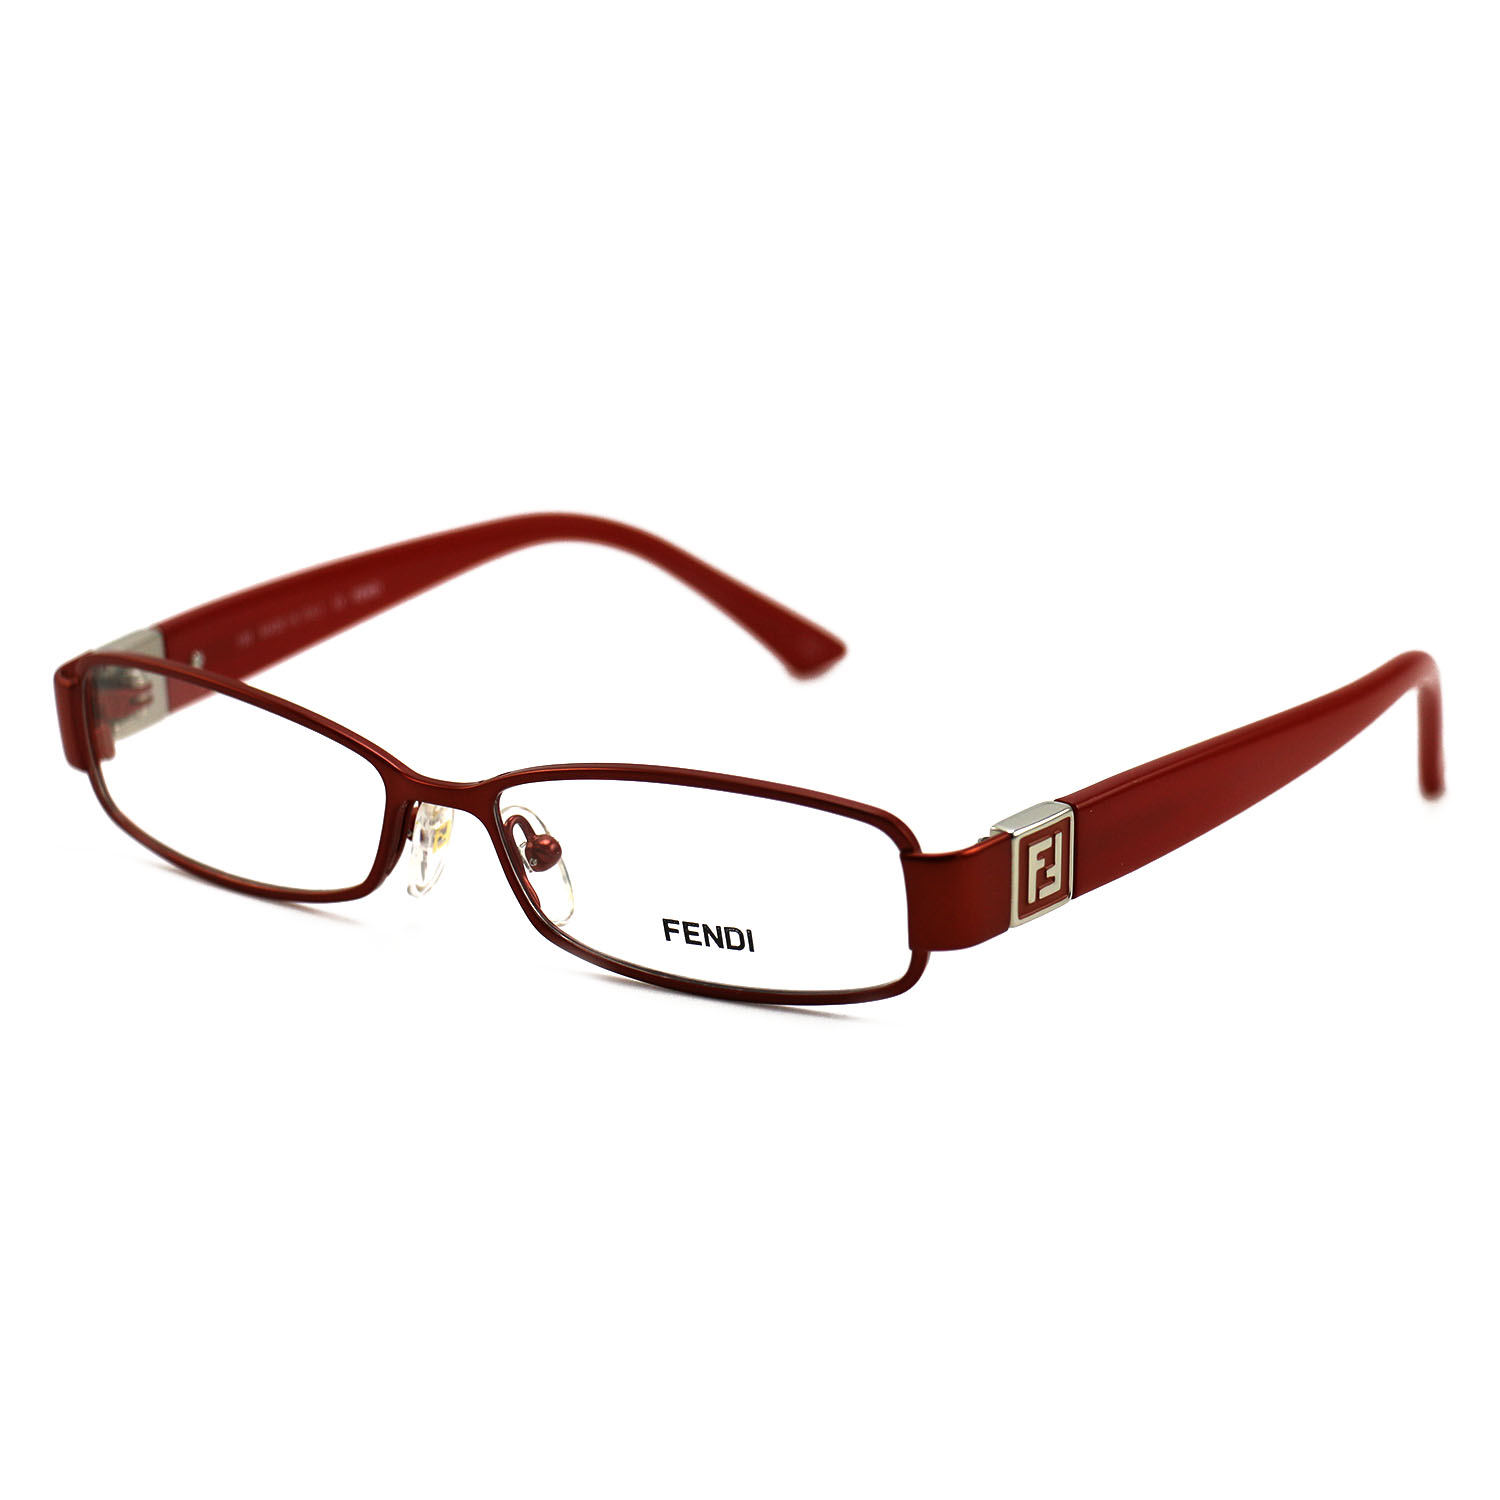 Fendi Women's Eyeglasses F904 618 Red 51 14 130 Full Rim Oval ...